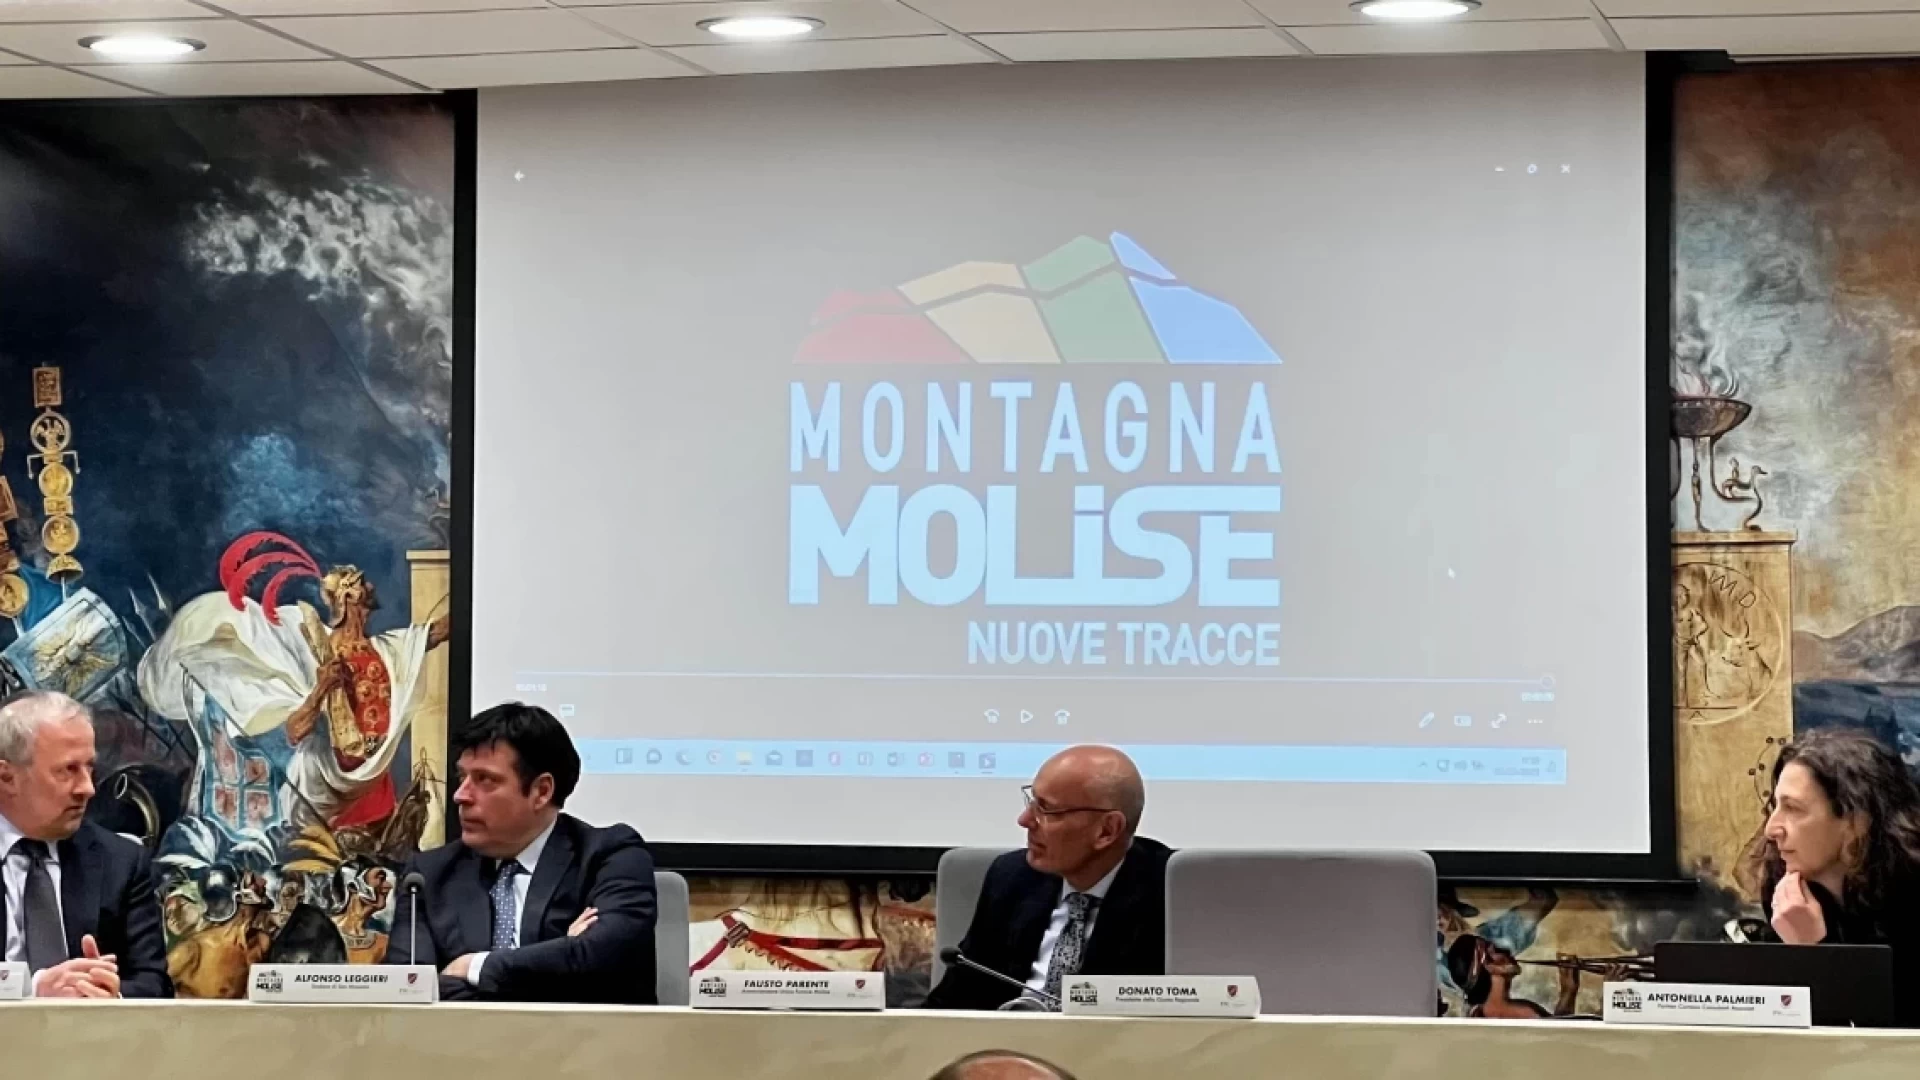 Montagna Molise, stagione di grande successo. Fausto Parente: “I numeri ci hanno dato ragione. Lavoriamo al programma invernale”.